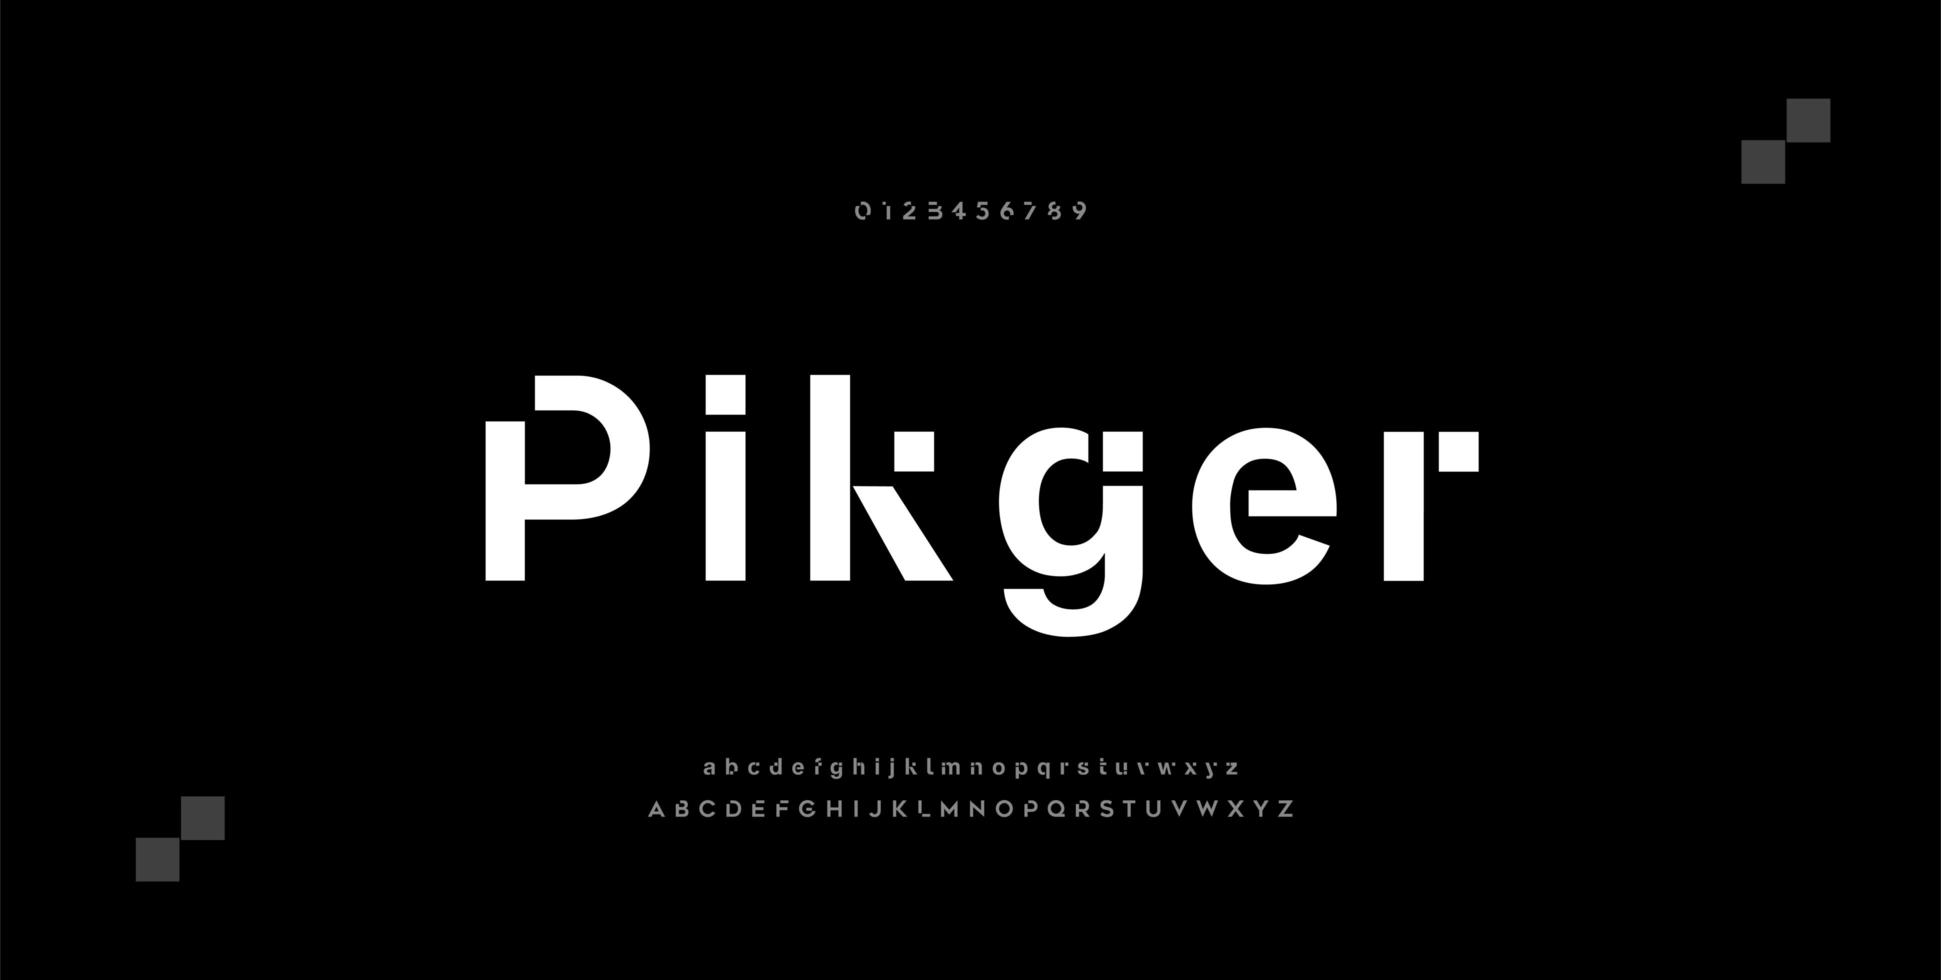 abstrakta minimala moderna alfabetsteckensnitt. typografi teknik elektronisk digital musik framtida kreativt teckensnitt. vektor illustration